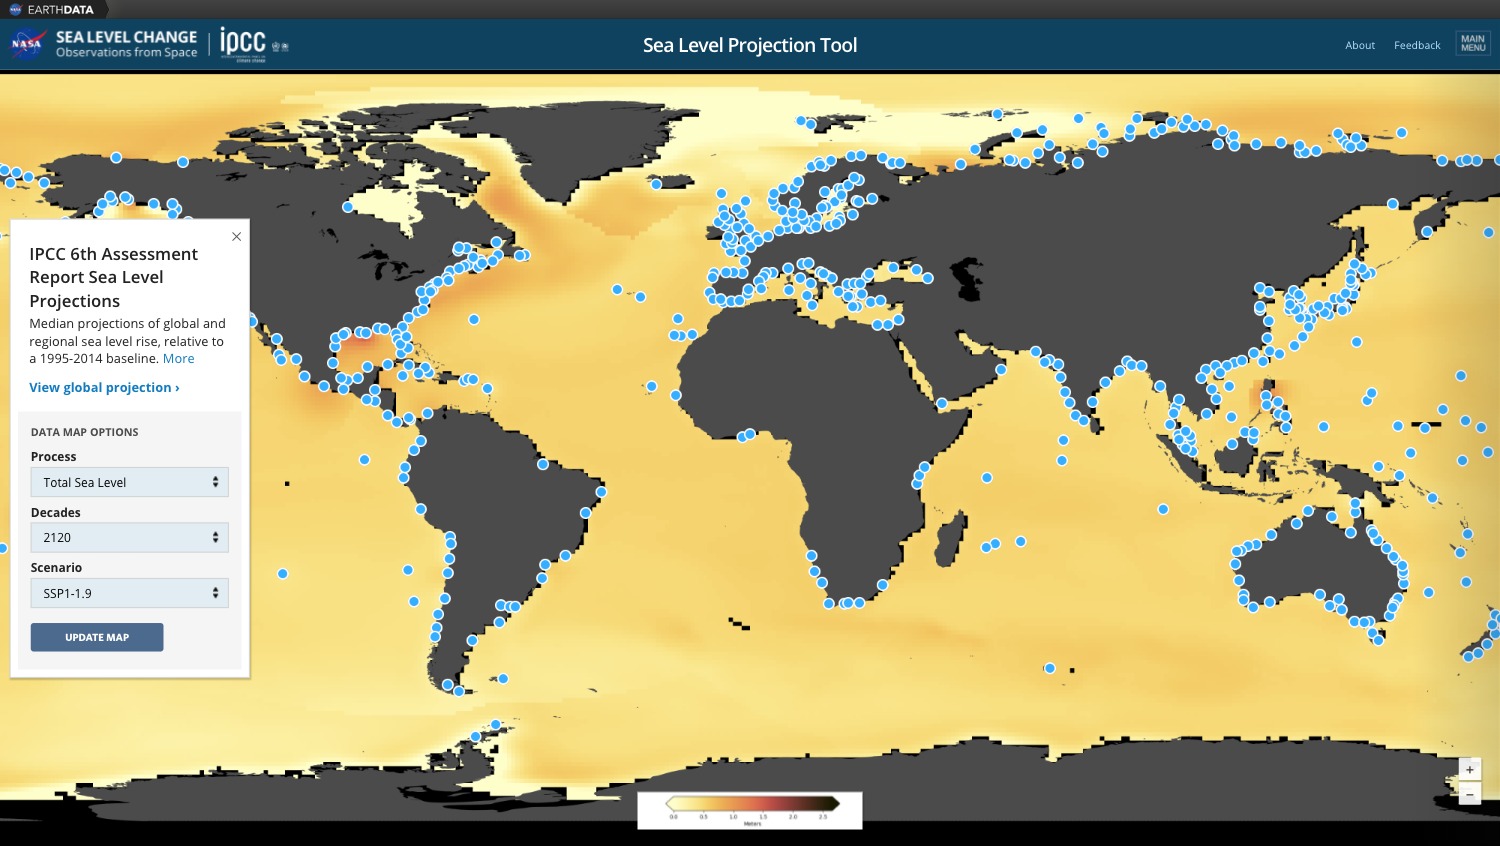 IPCC/NASA sea level projection tool